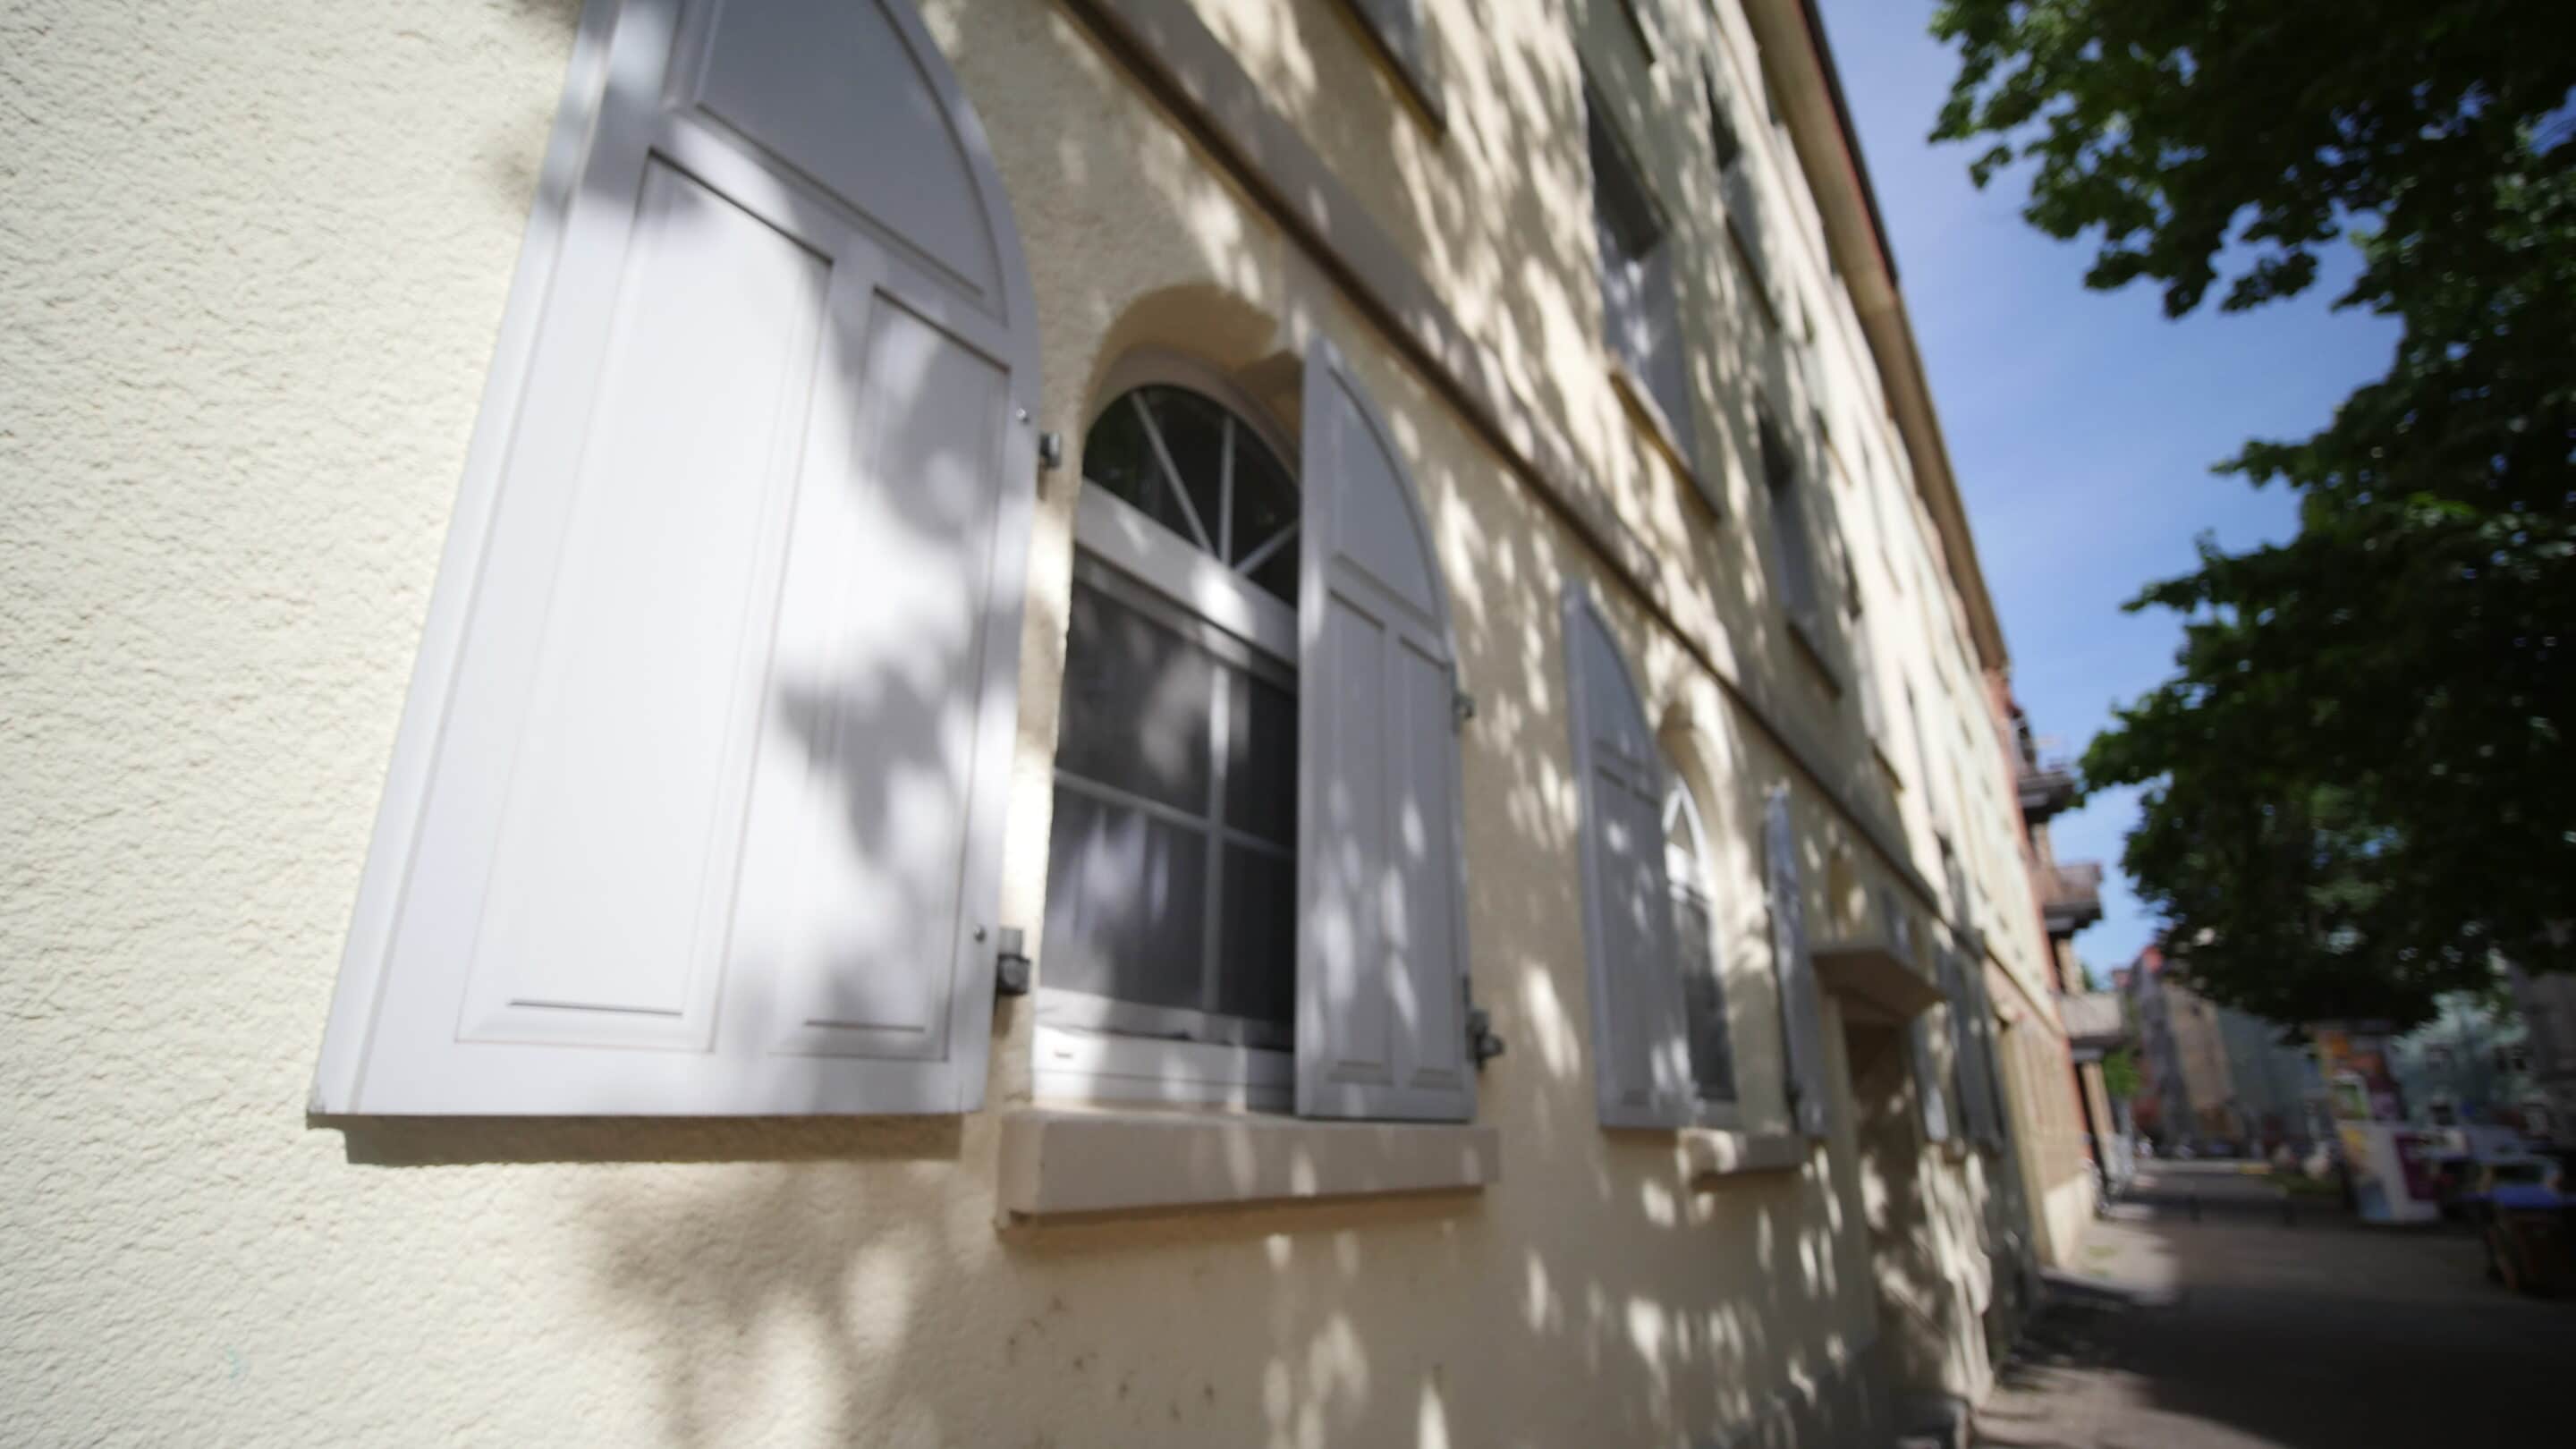 Fensterläden an einem Haus im Hanseviertel Erfurt